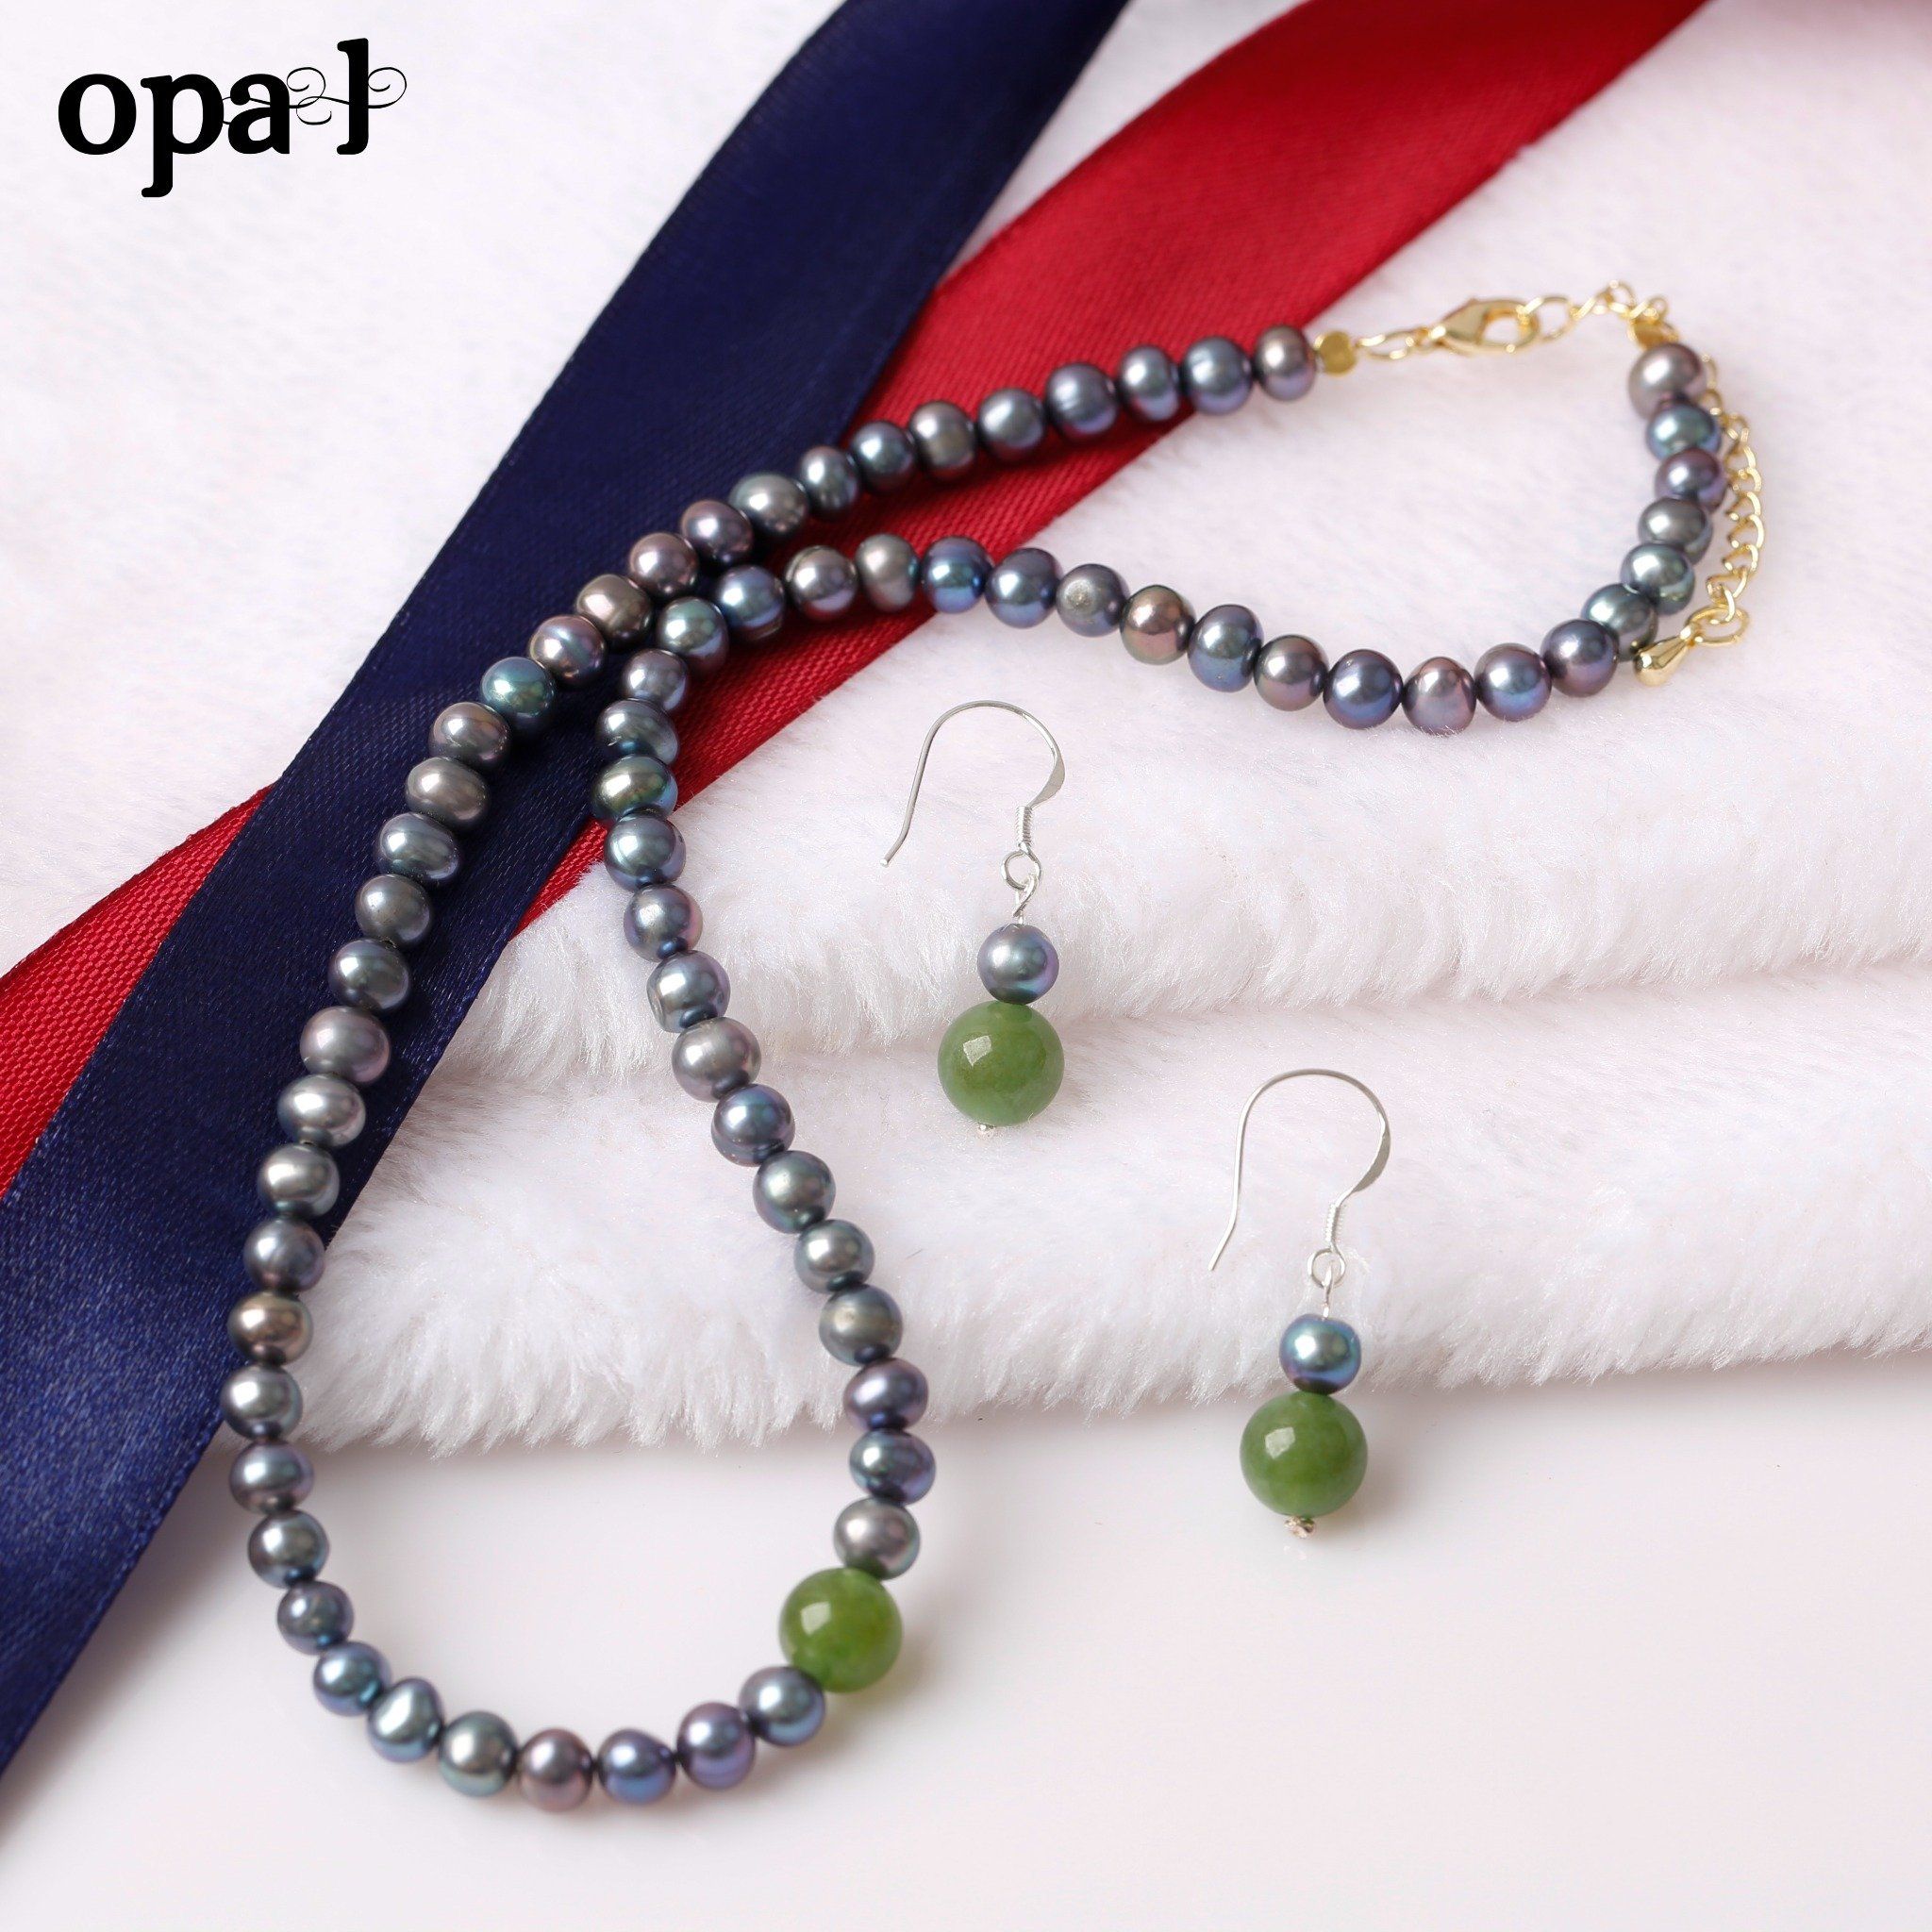  Bộ ngọc trai mini đen ánh xanh phong cách hiện đại thương hiệu Opal 